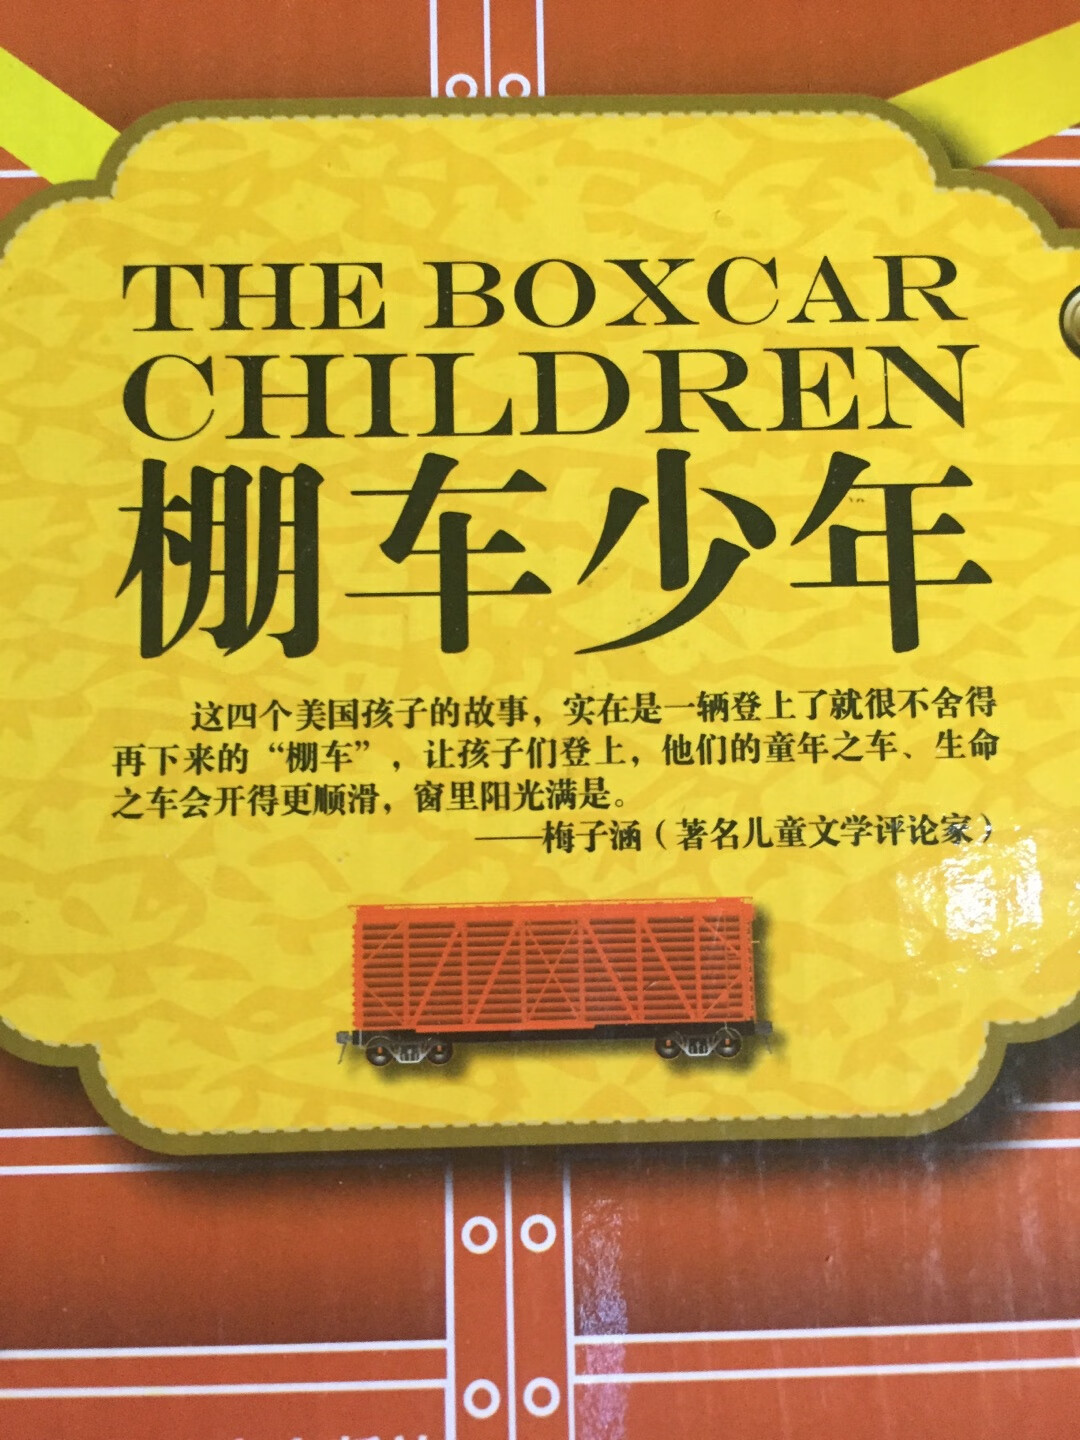 这系列的书非常棒，一辑内4本中文4本英文，给孩子阅读非常方便。